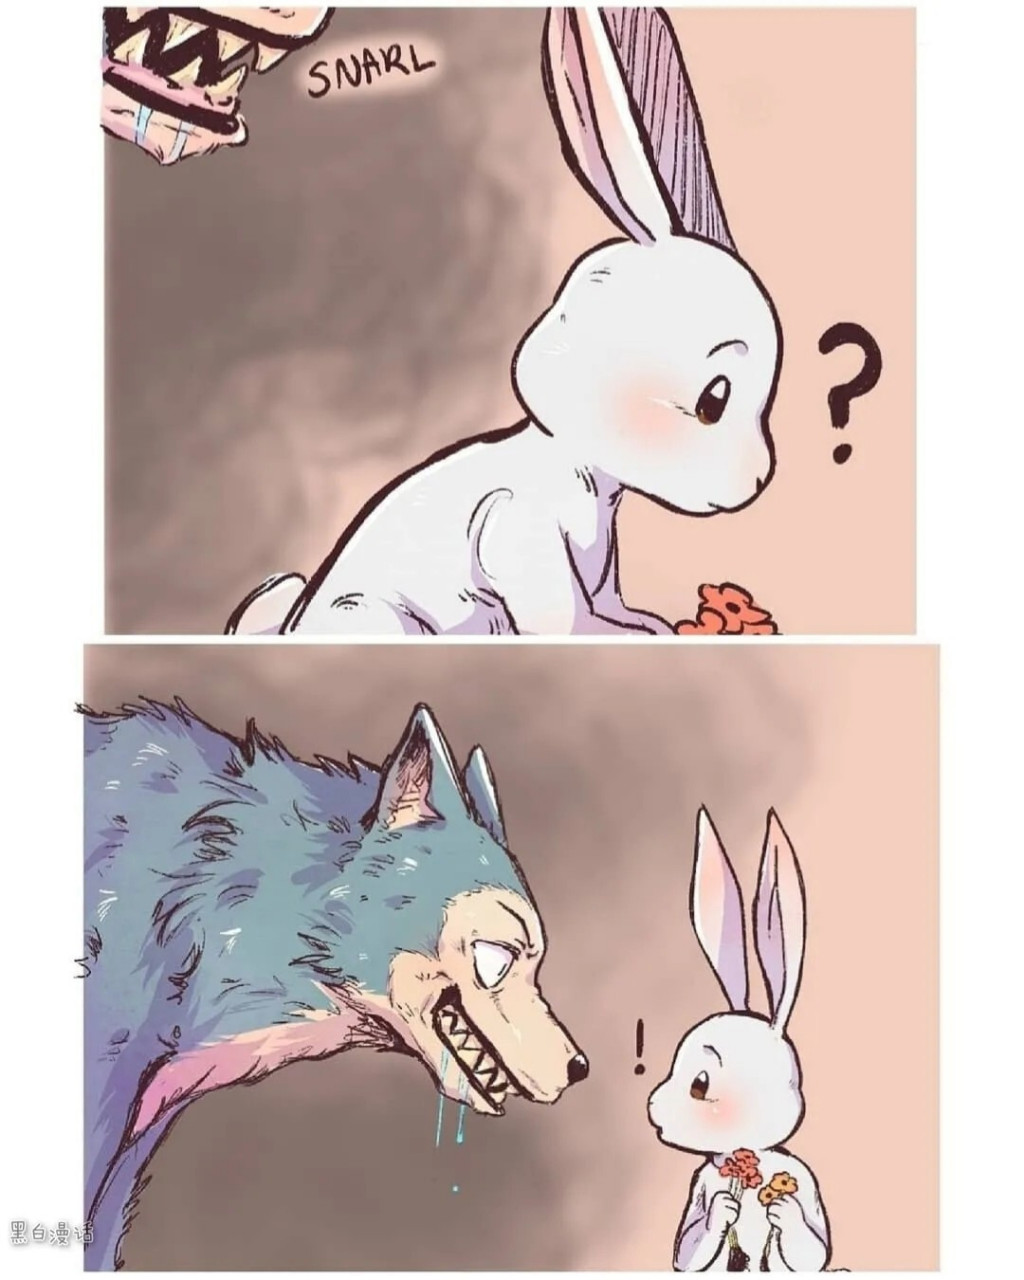 大灰狼和小白兔 好有爱的治愈小漫画